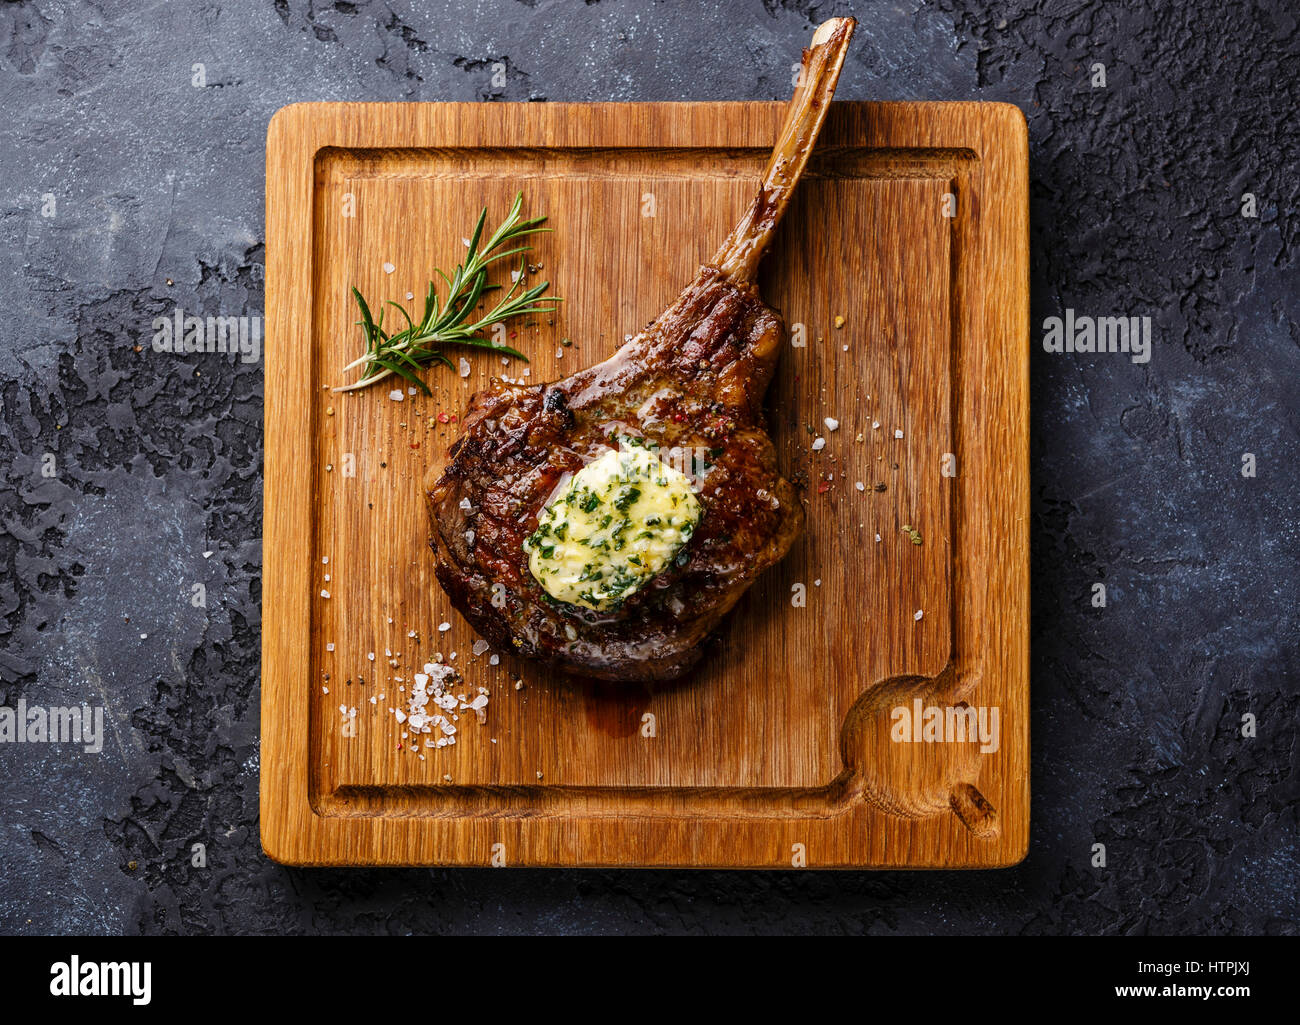 Le Steak grillé sur l'os de ris de veau de au beurre d'herbes sur une planche à découper sur fond sombre Banque D'Images